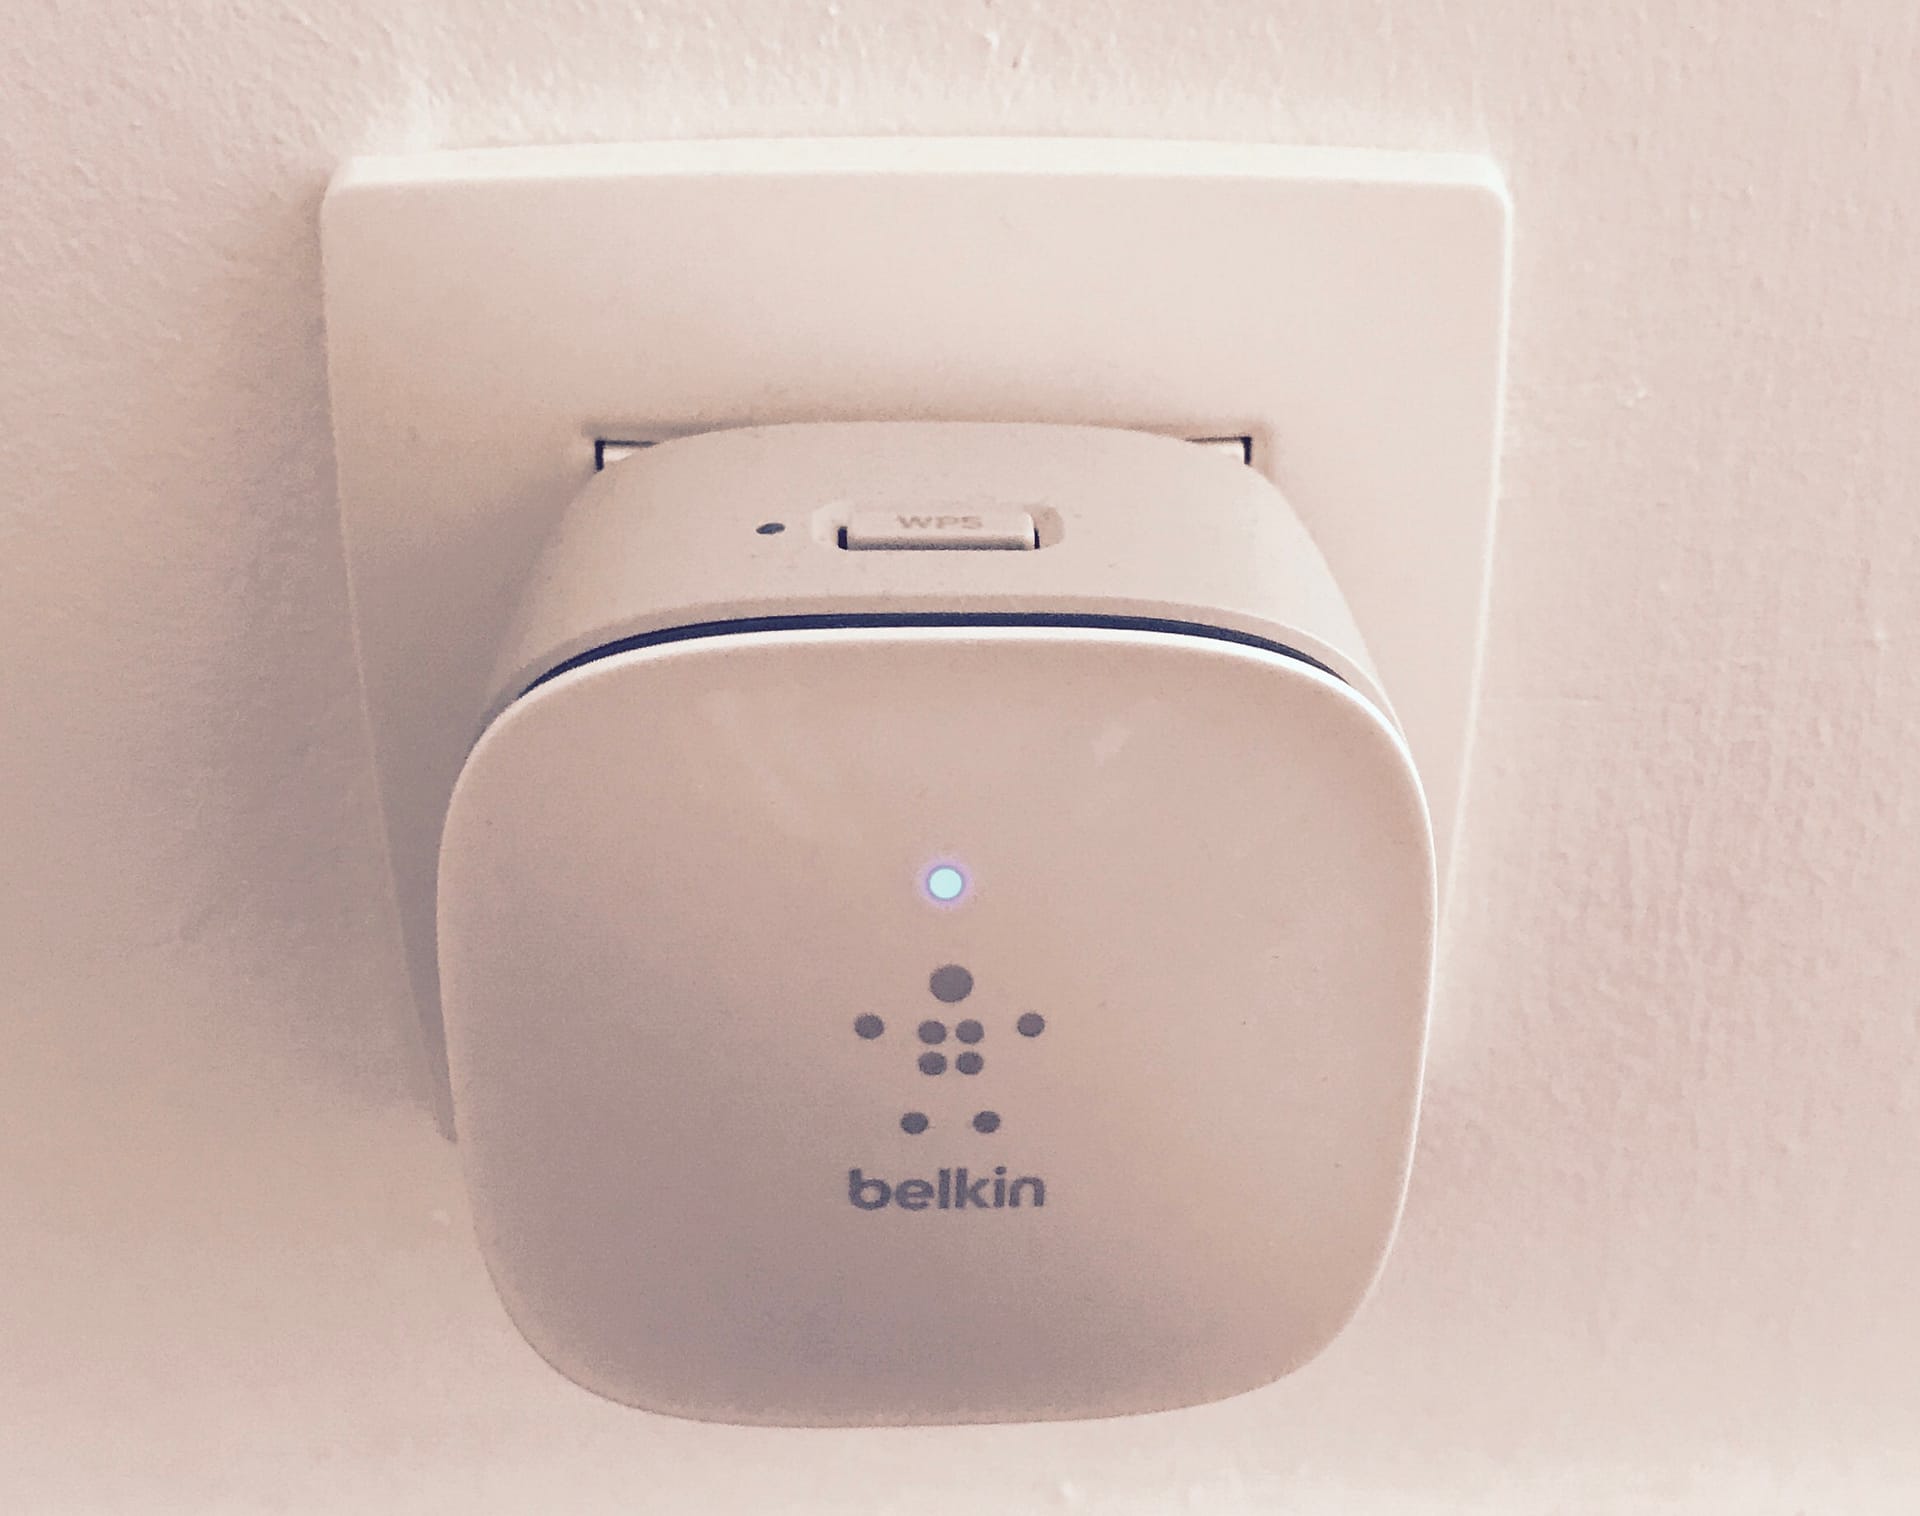 Belkin wifi repeater test F9K1015az